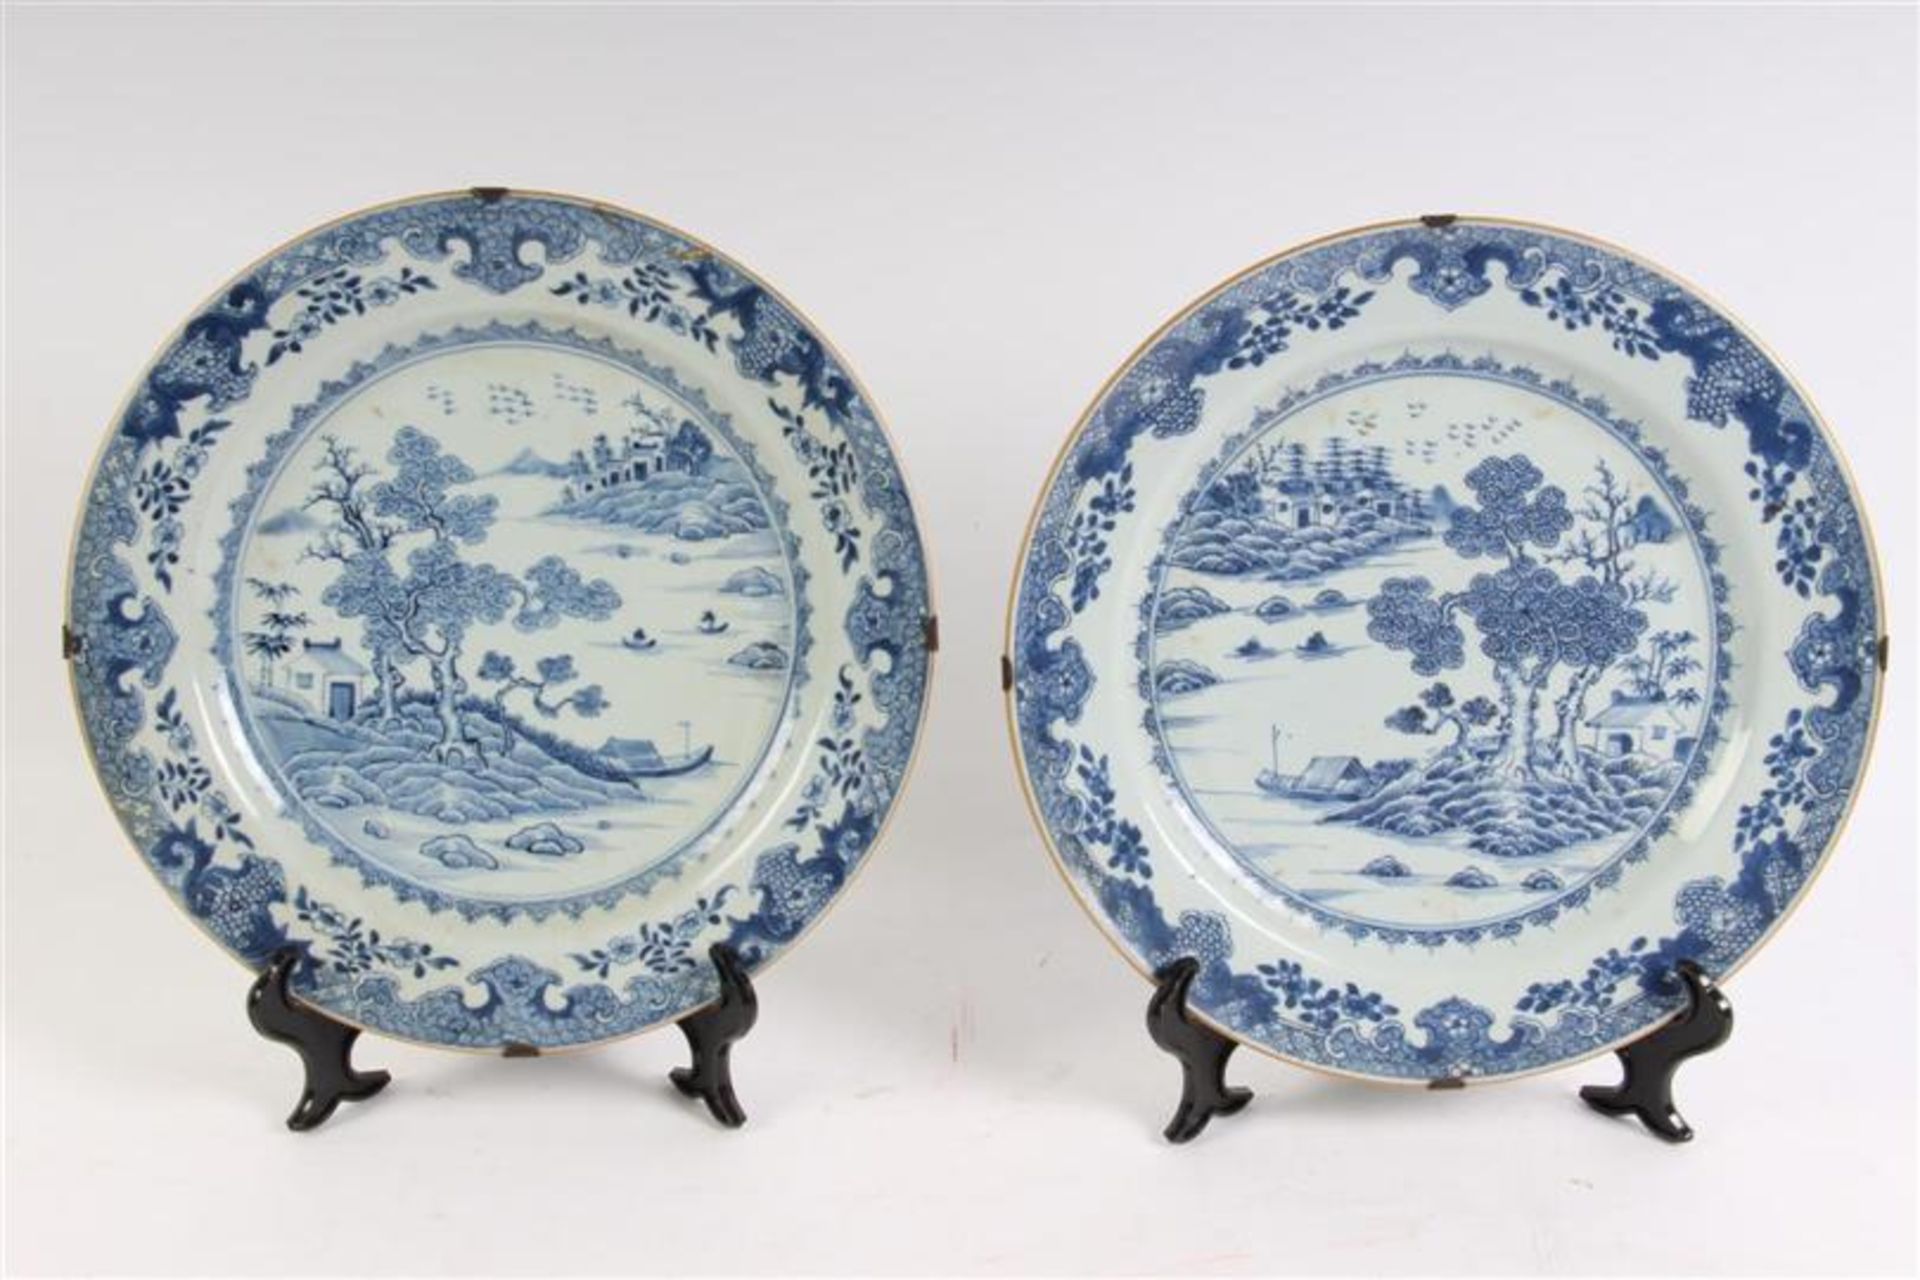 Twee Chinees porseleinen schotels met rivierlandschapdecor, 18e eeuw, één geplakt. D: 30.5 cm.